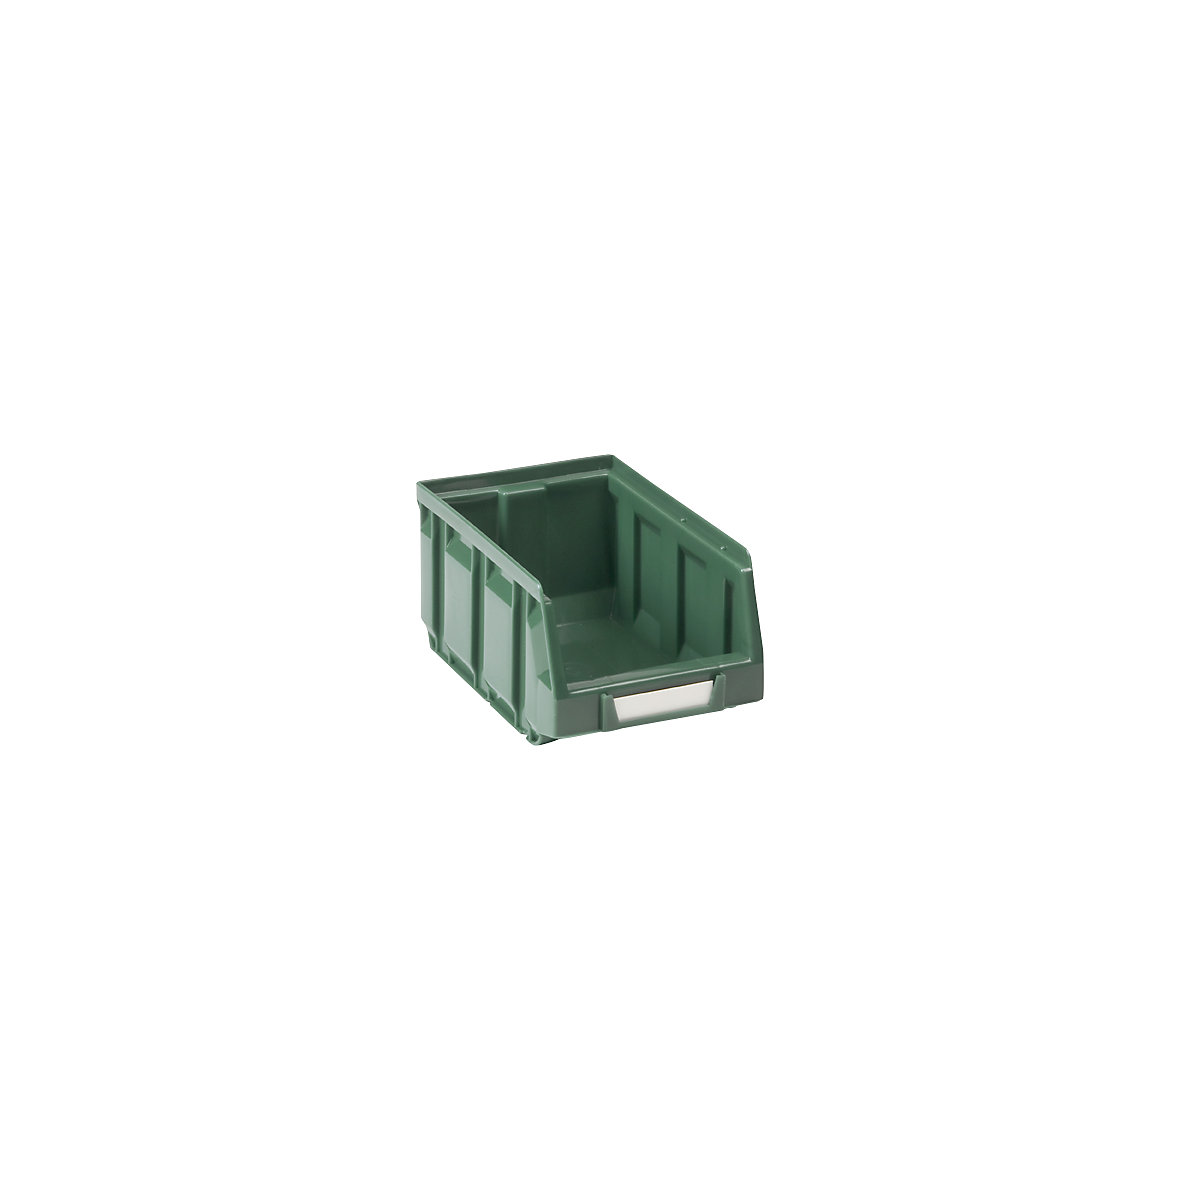 Sichtlagerkasten aus Polyethylen, LxBxH 167 x 105 x 82 mm, grün, VE 48 Stk-6